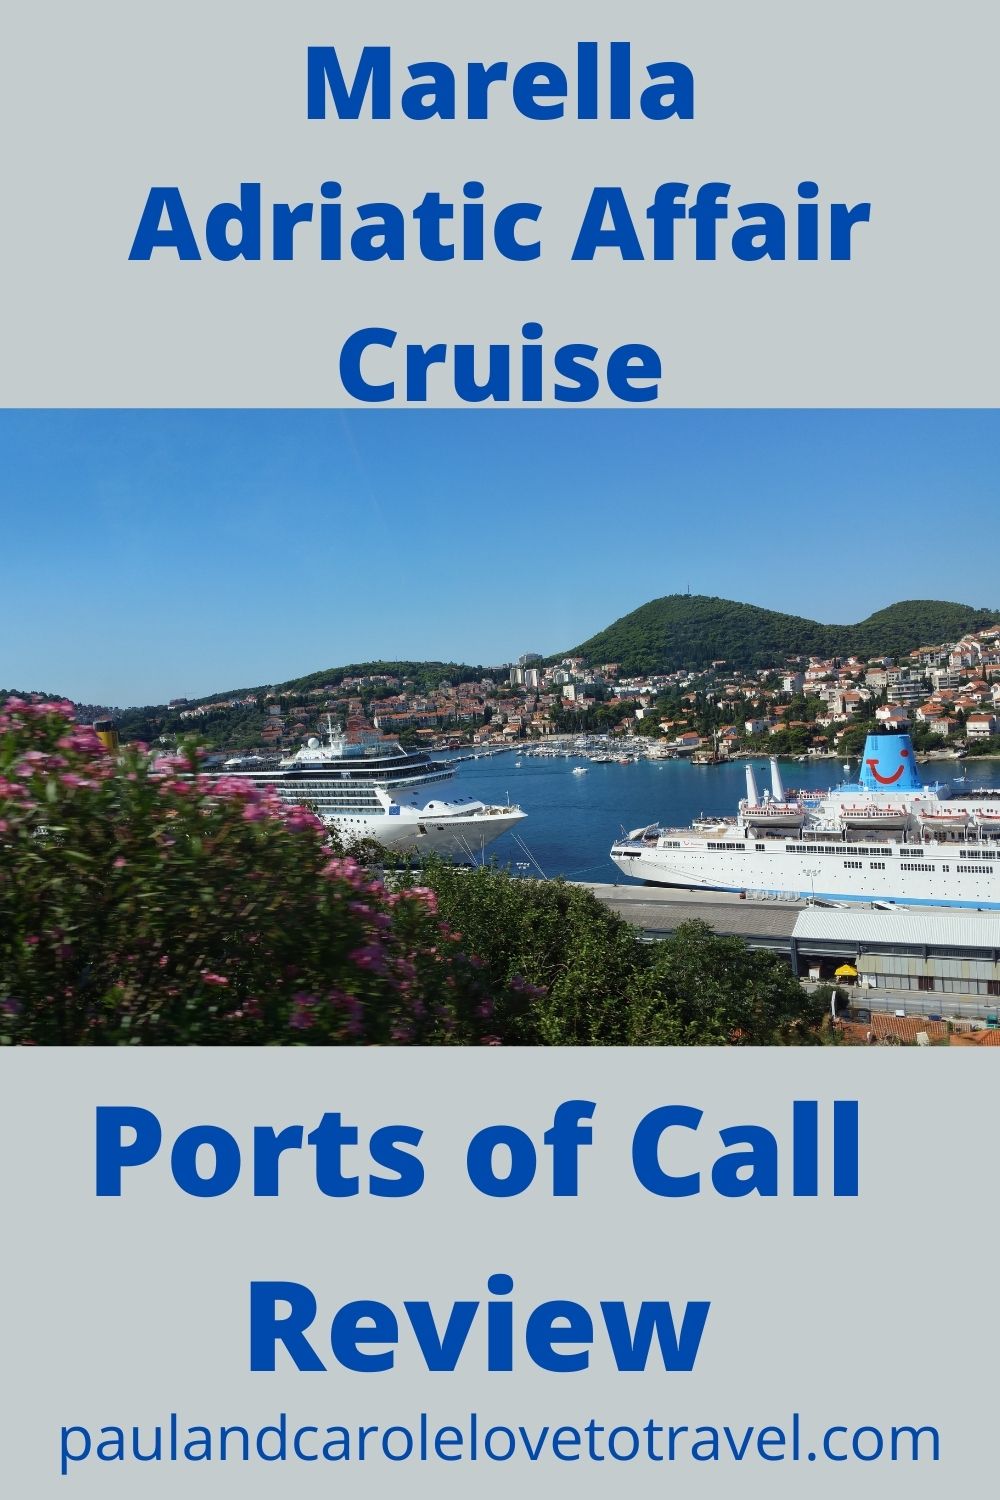 adriatic affair cruise